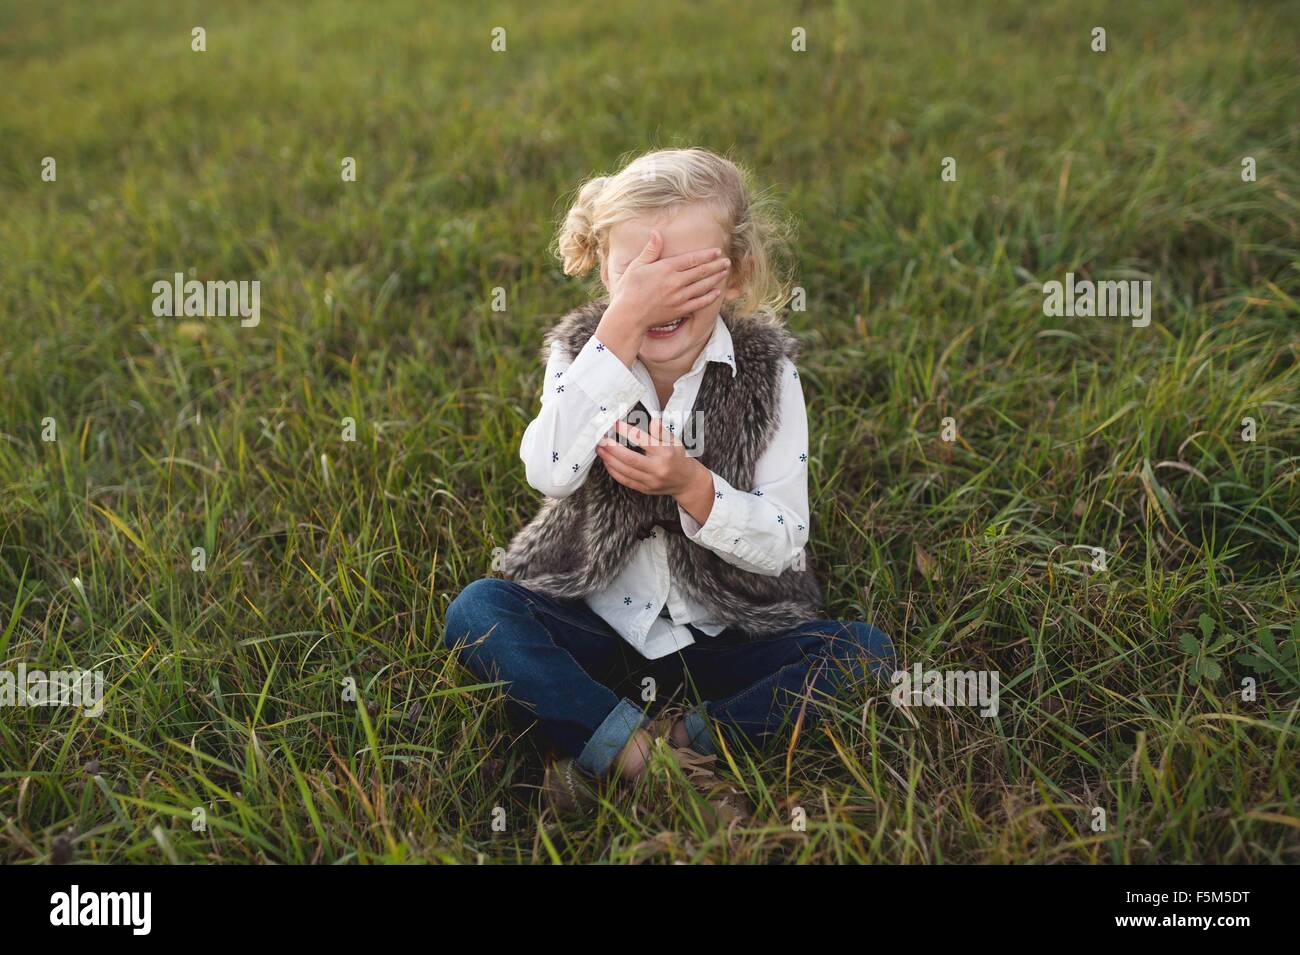 Jeune fille assise sur l'herbe, couvrant les yeux Banque D'Images